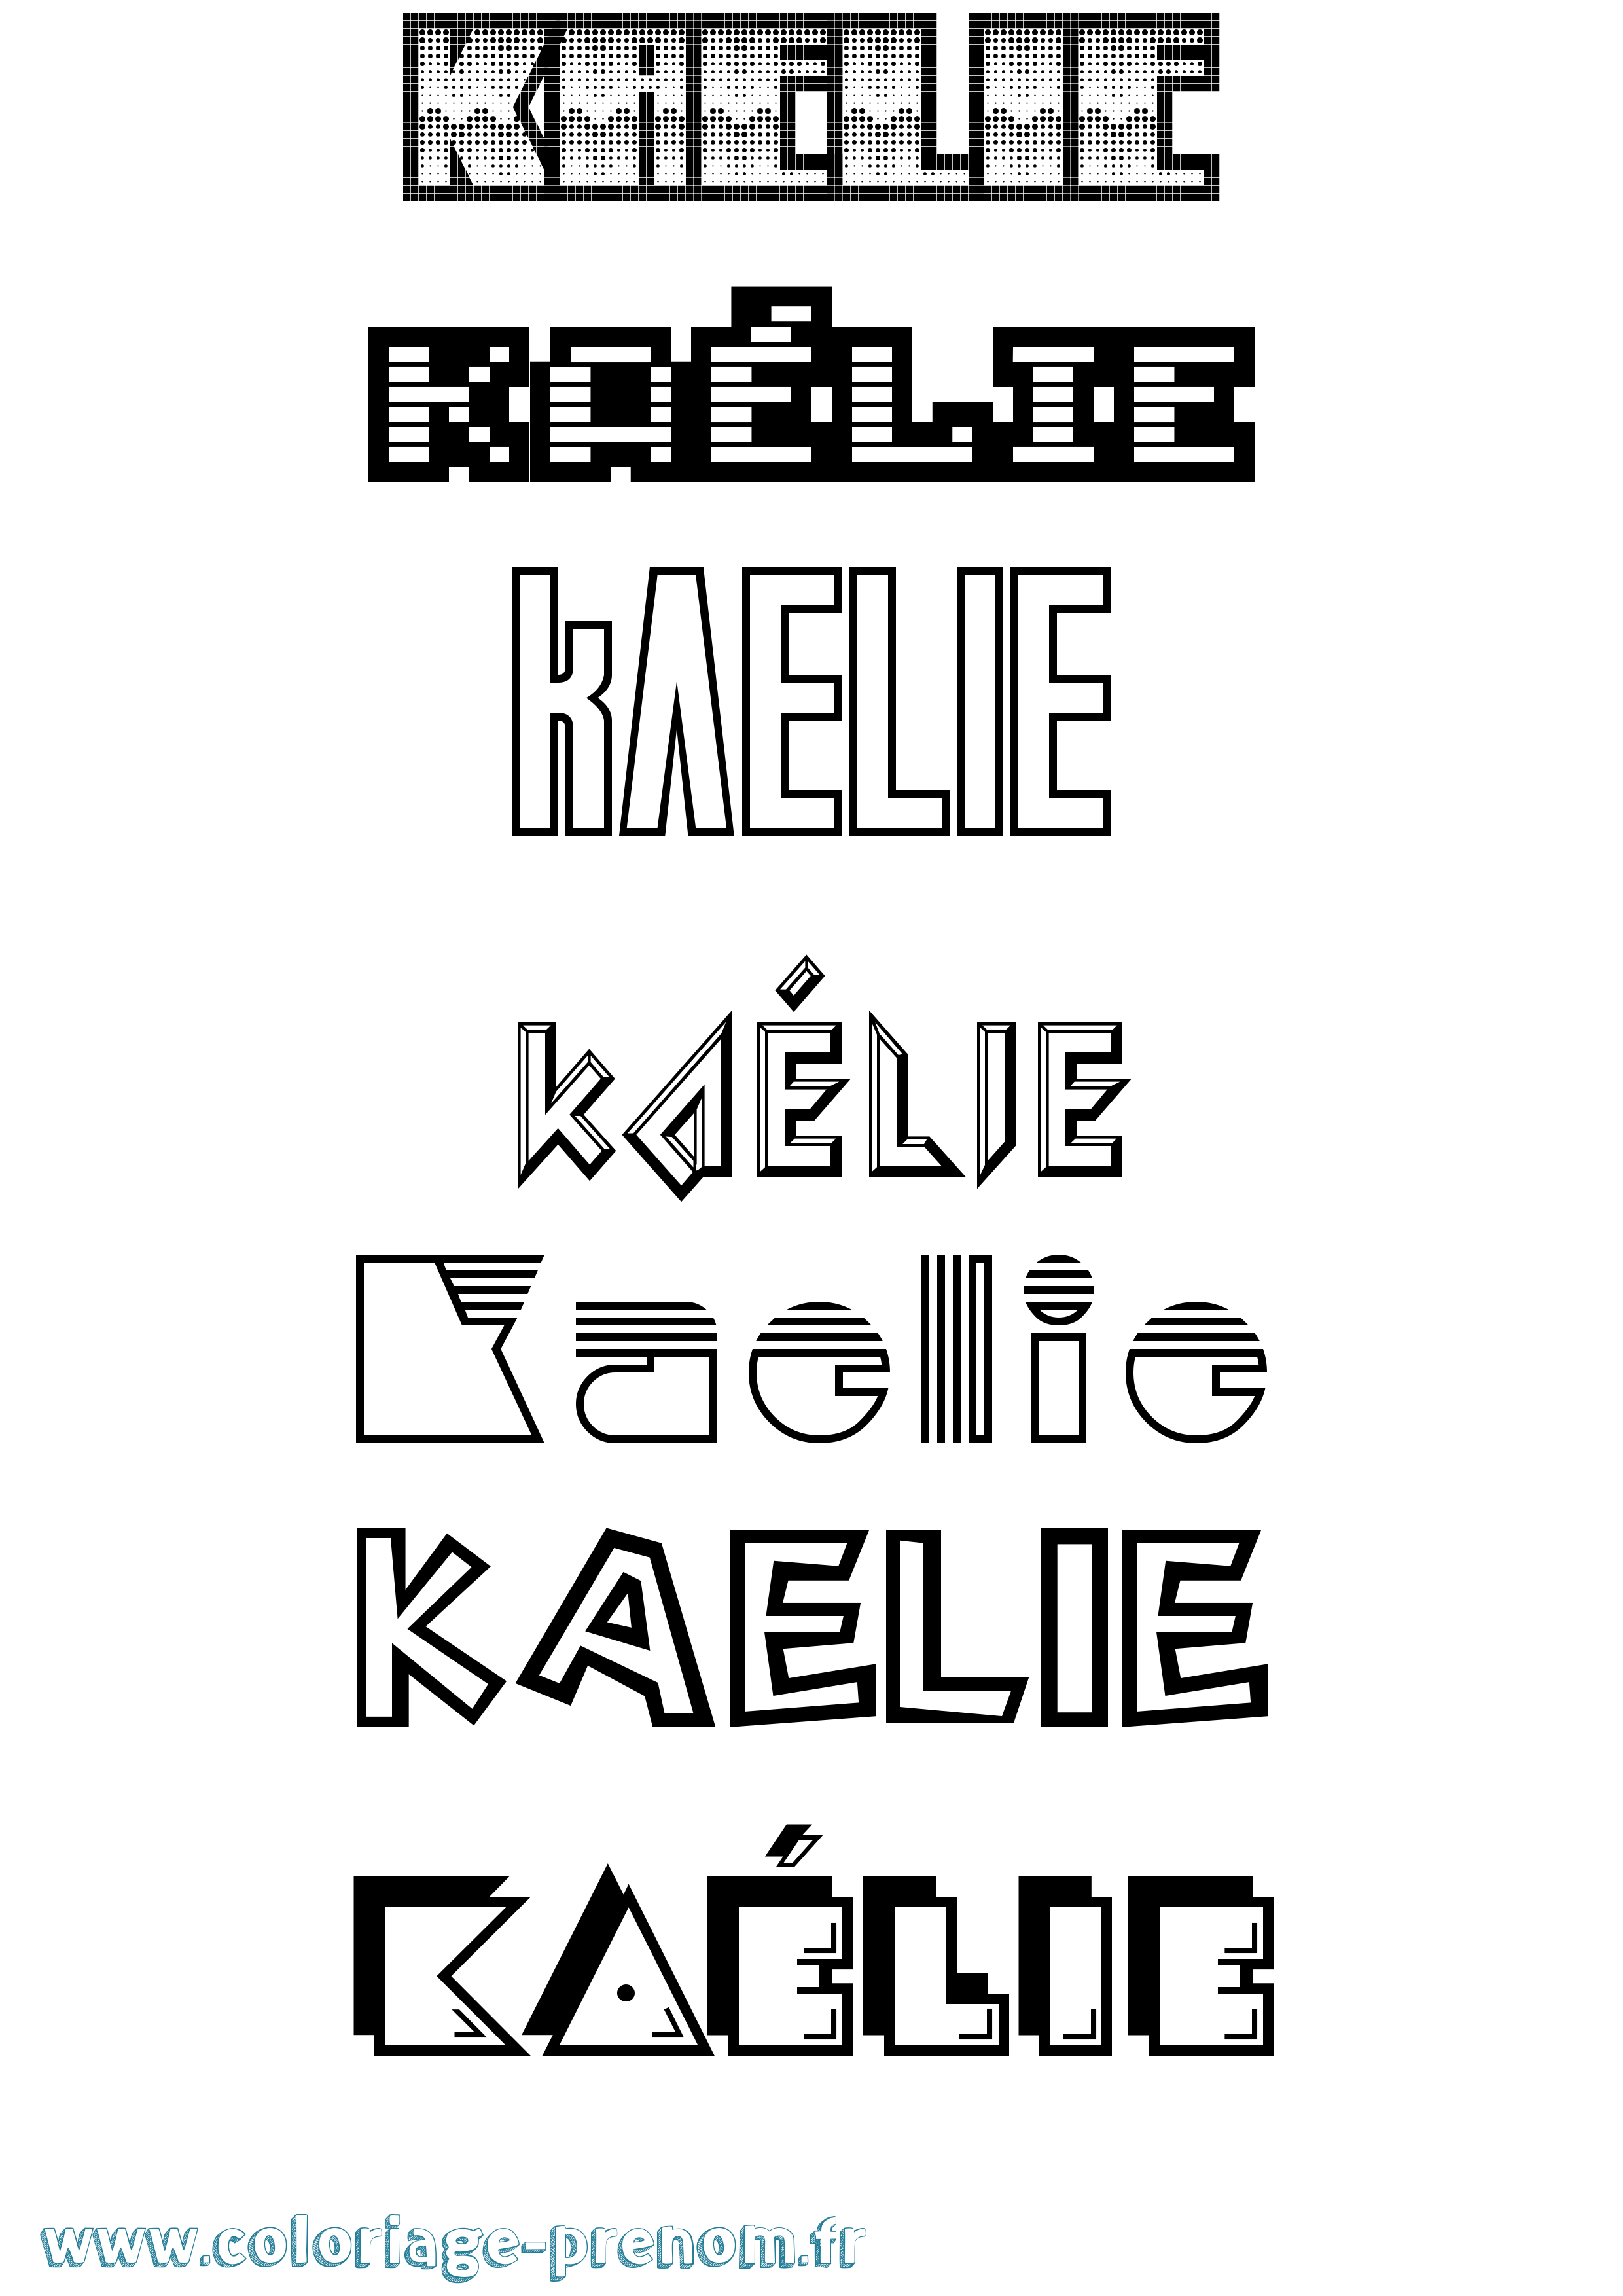 Coloriage prénom Kaélie Jeux Vidéos